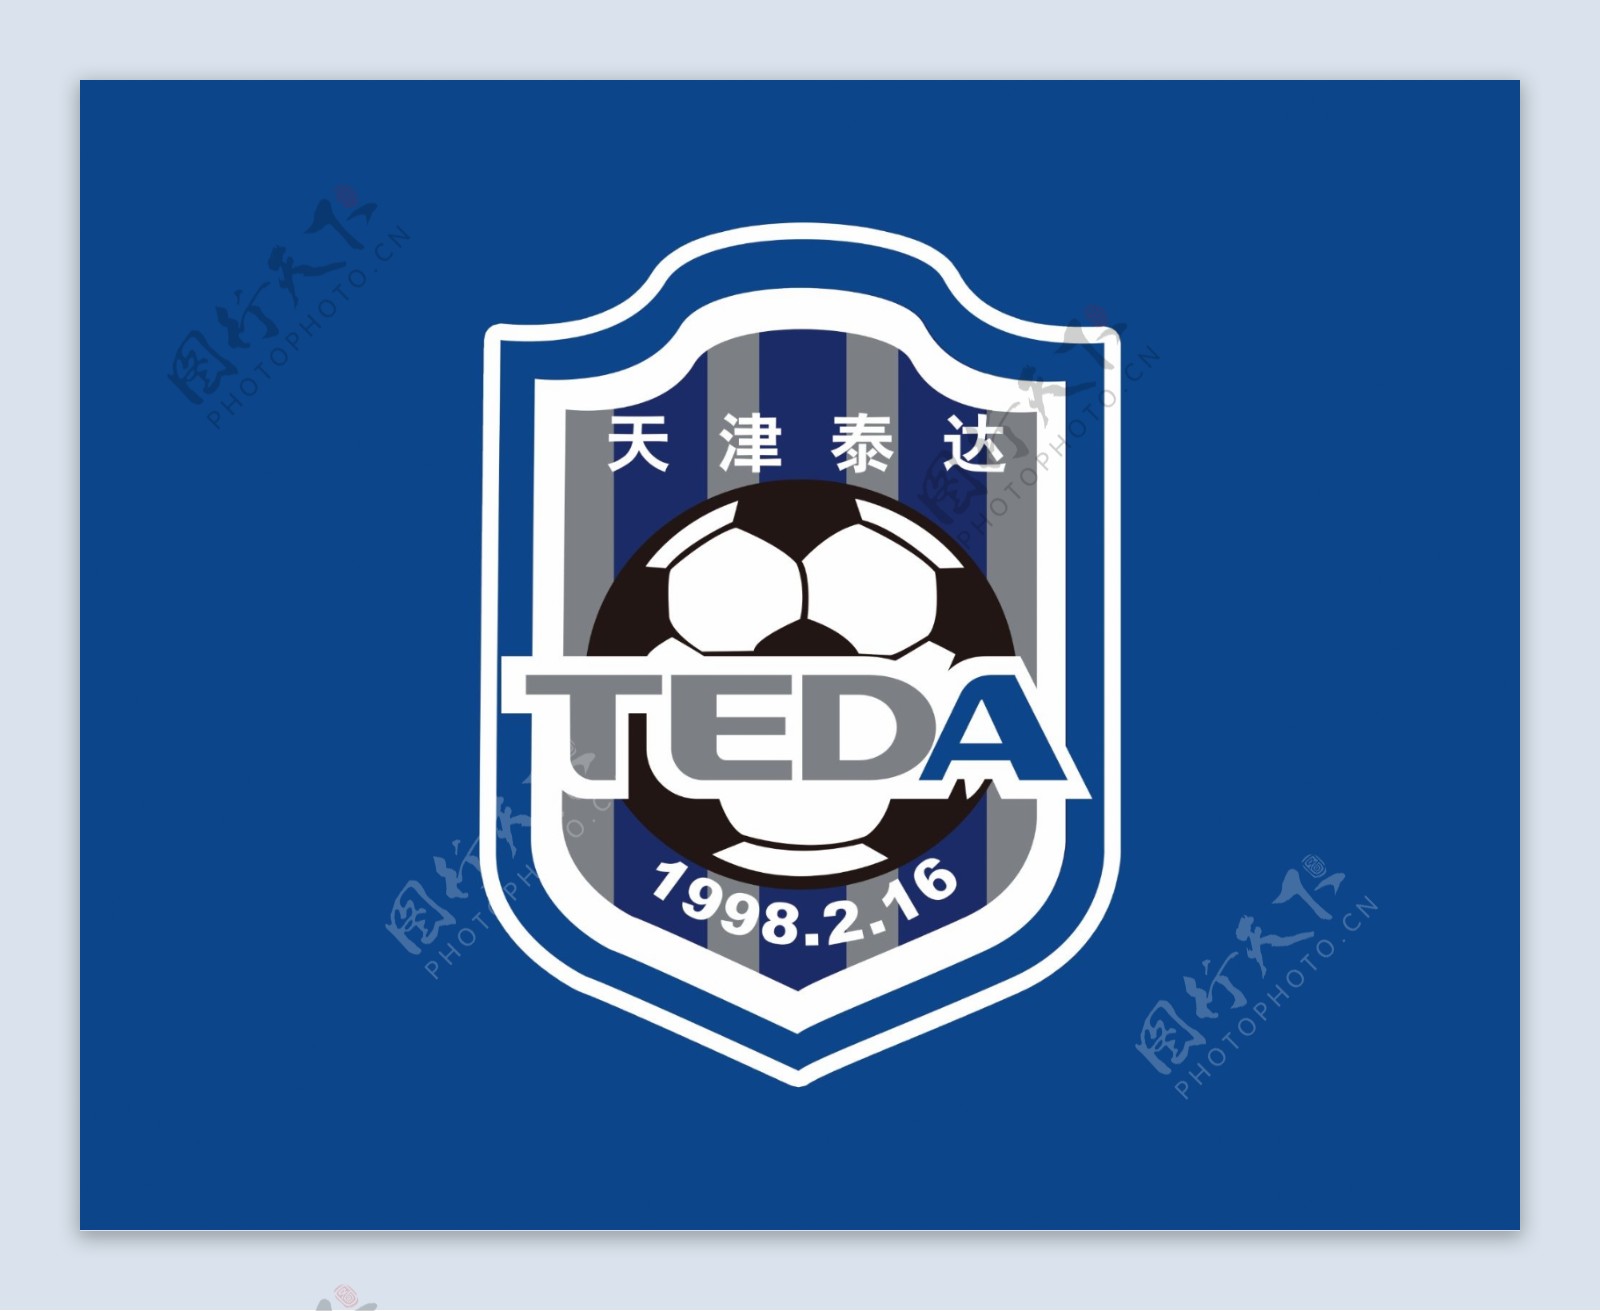 足球队队旗队徽